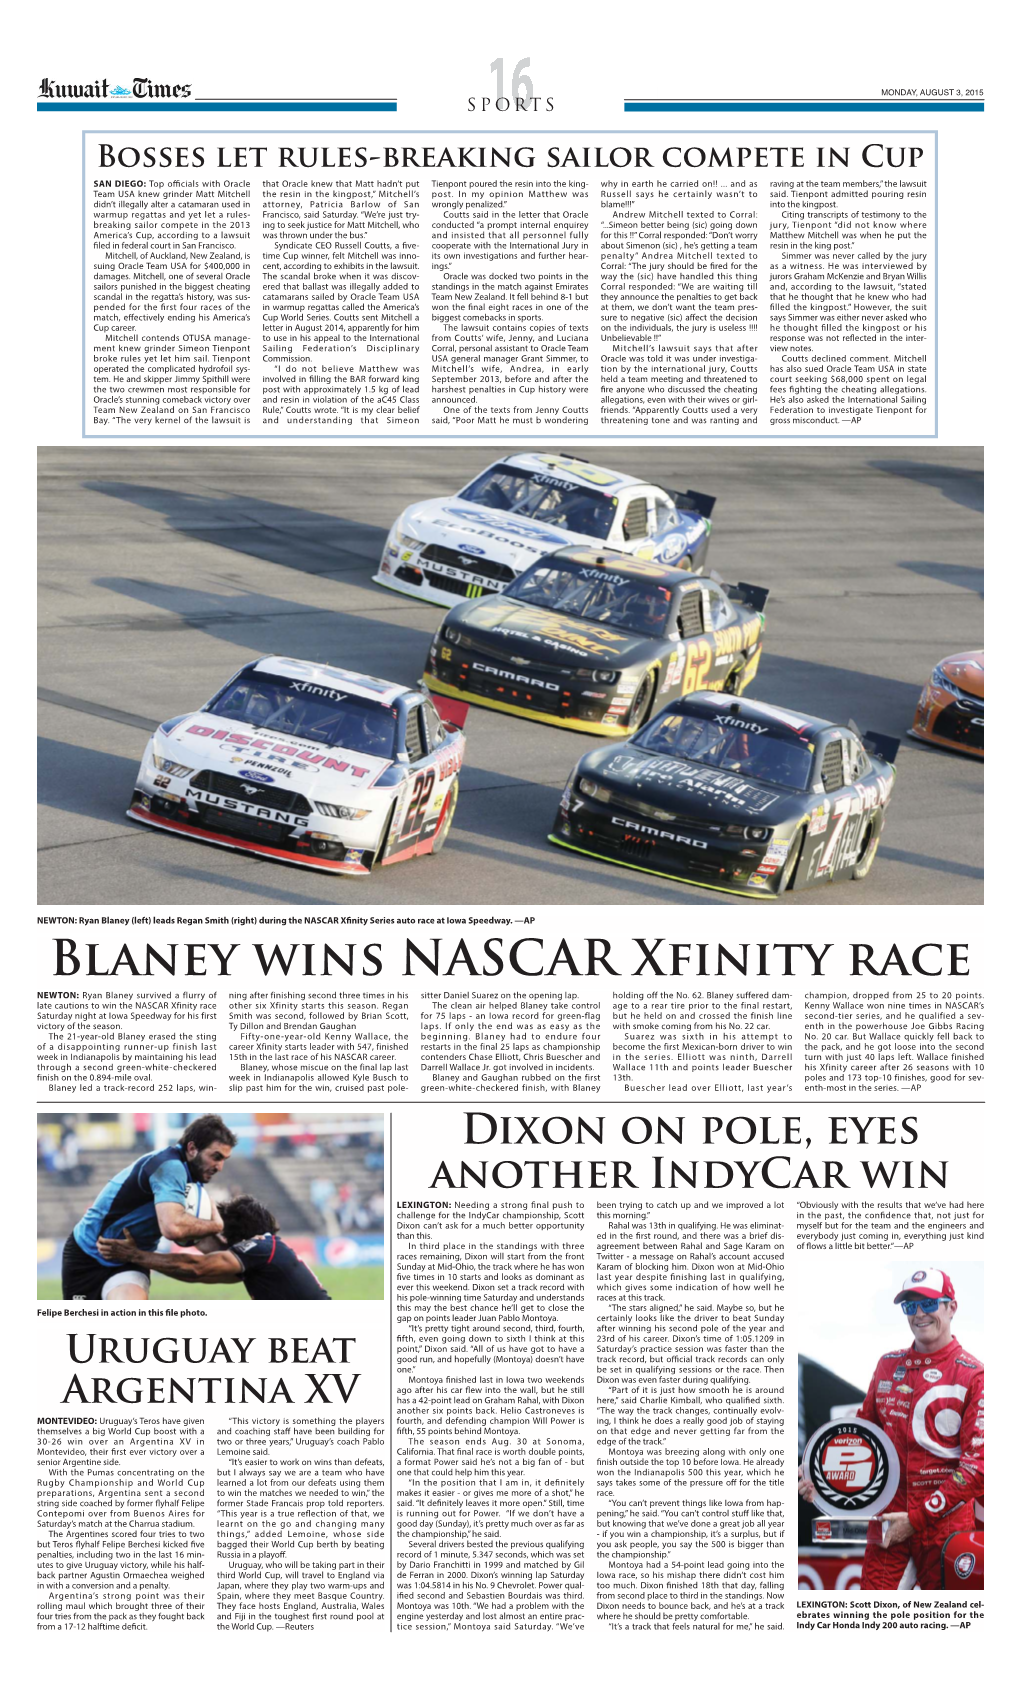 Blaney Wins NASCAR Xfinity Race